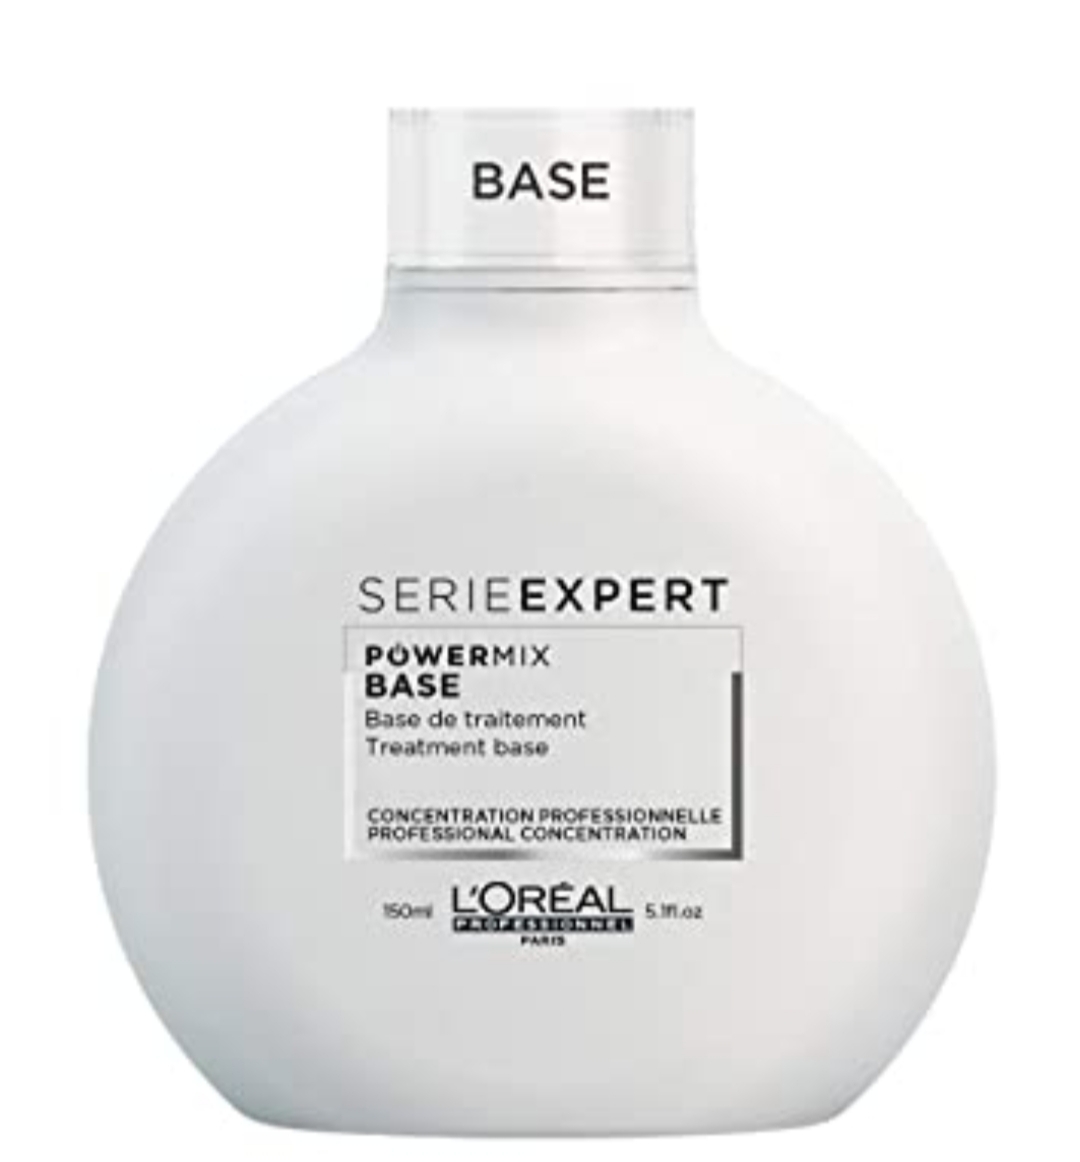 فراورده های حالت دهنده ،نرم کننده وتثبیت کننده آرایش مو (کرمها ، لوسیونها وروغنها) L'OREAL PROFESSIONNEL SERIE EXPERT POWER MIX BASE PROFESSIONAL CONCENTRATION